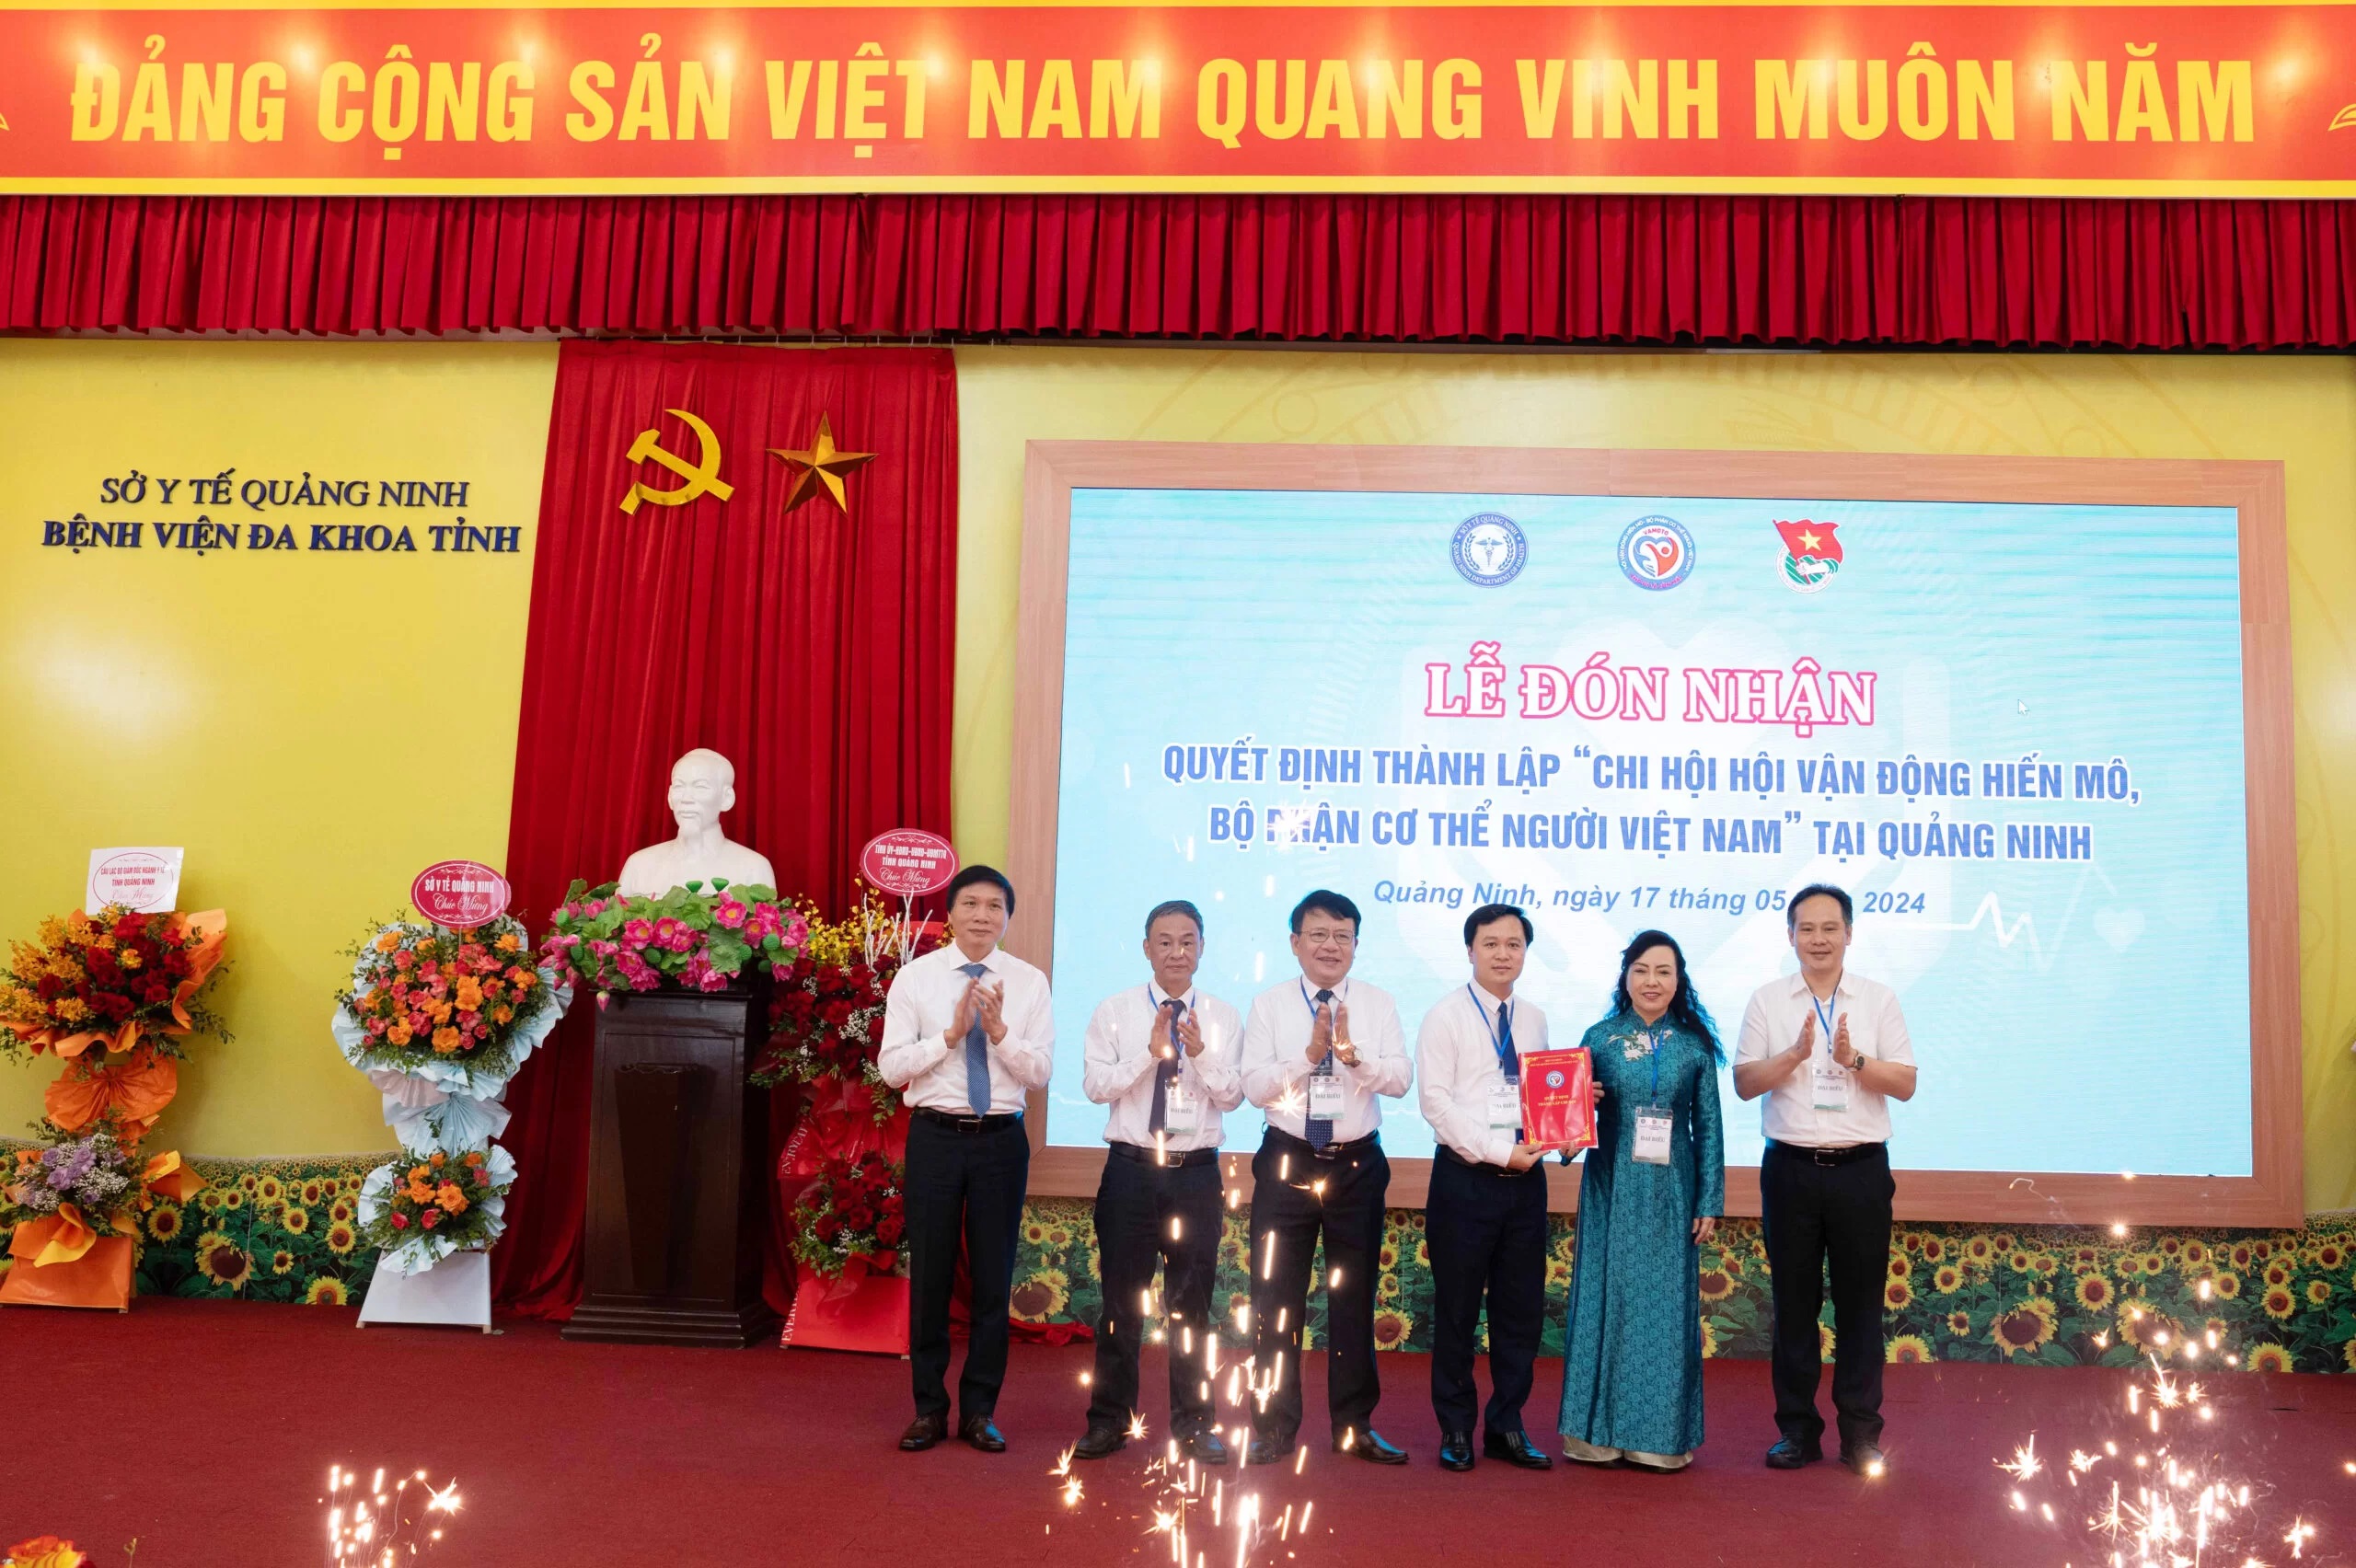 Thành lập Chi hội Hội Vận động hiến mô, bộ phận cơ thể người Việt Nam tại tỉnh Quảng Ninh